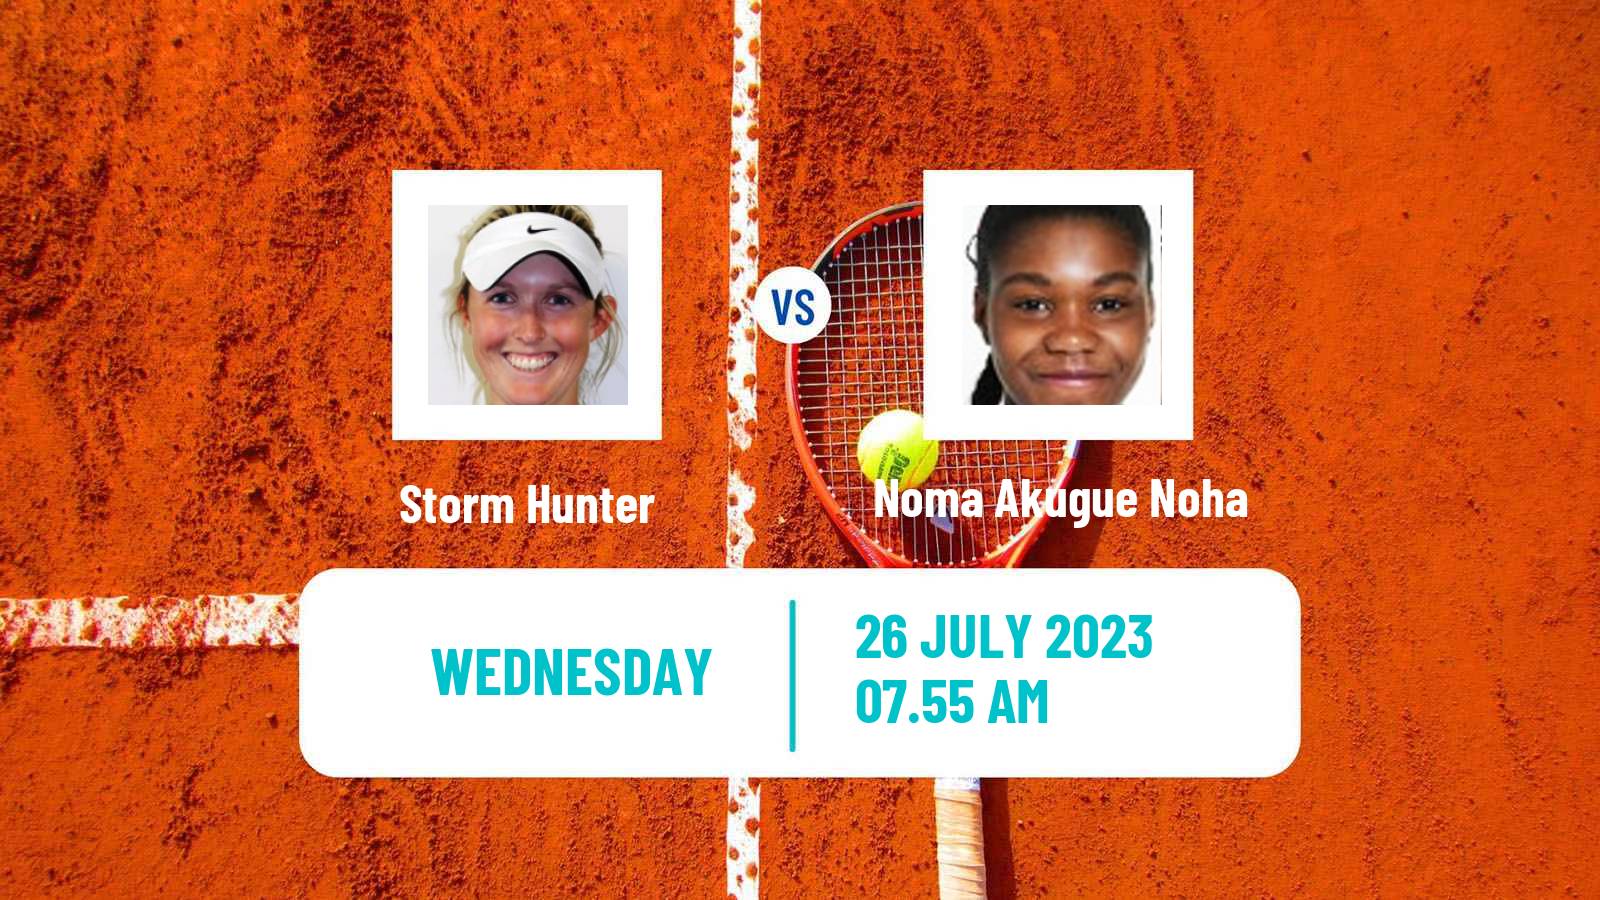 Tennis WTA Hamburg Storm Hunter - Noma Akugue Noha